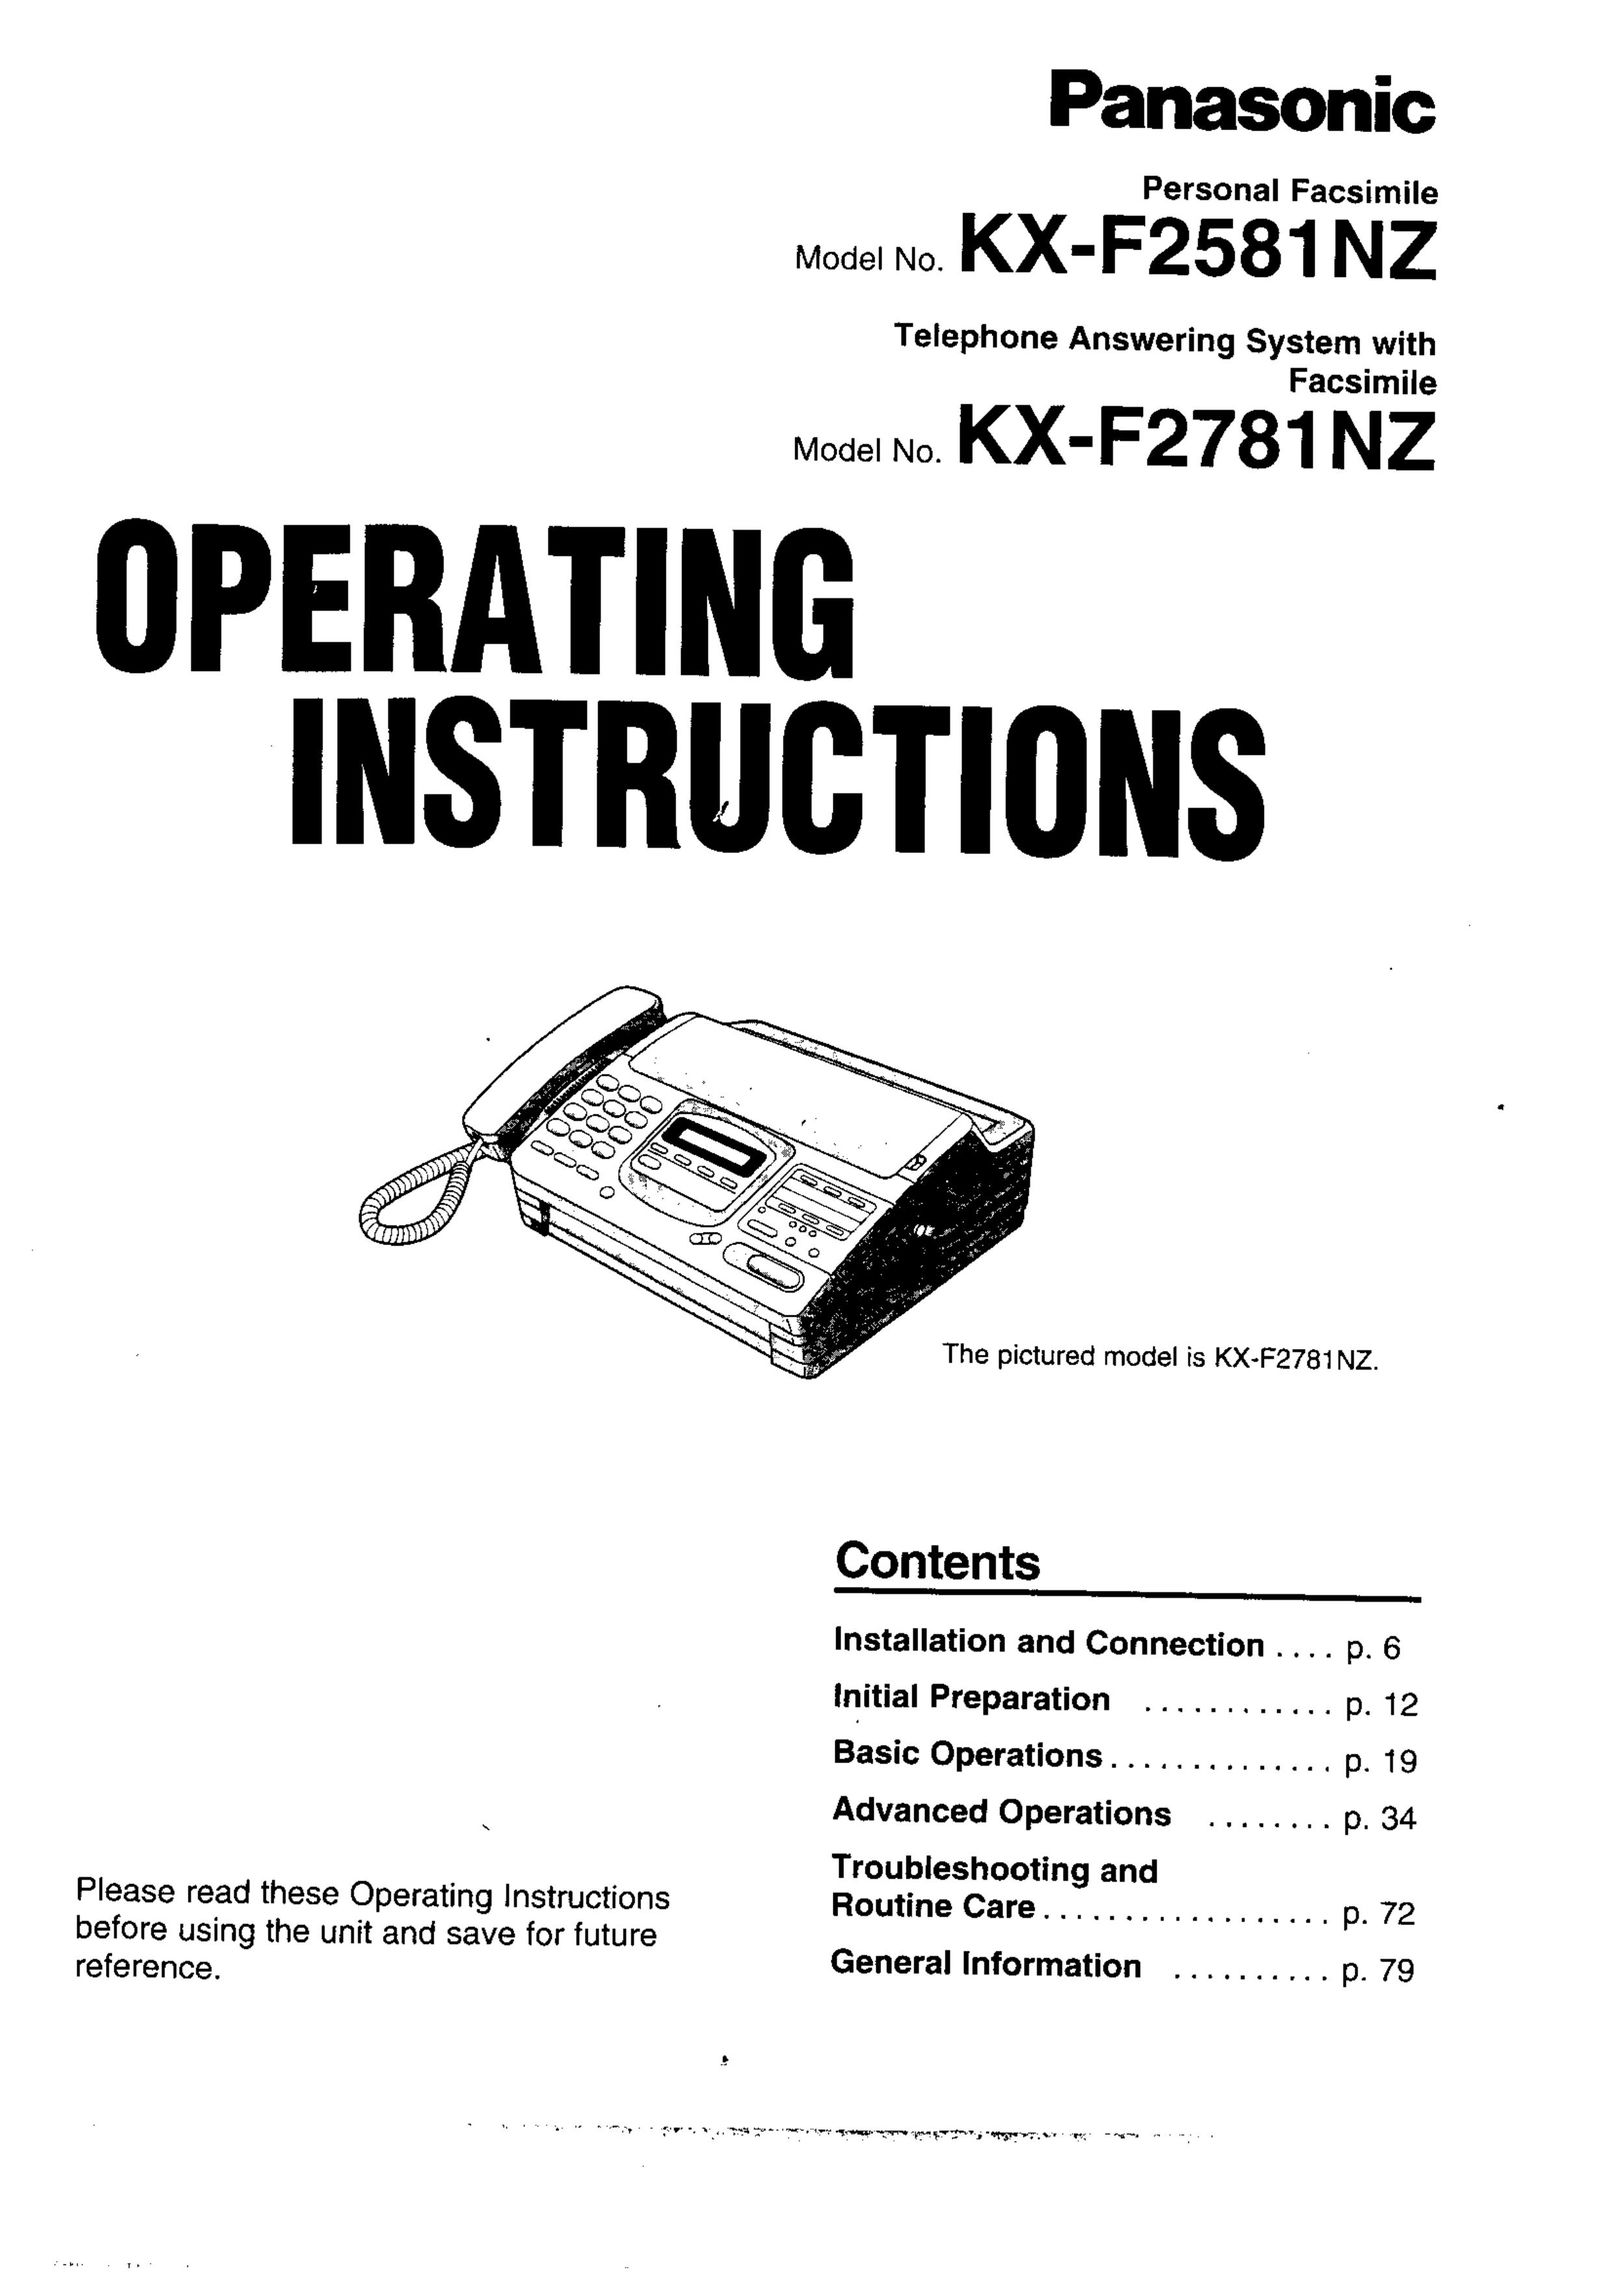 Panasonic KX-F2781NZ Fax Machine User Manual